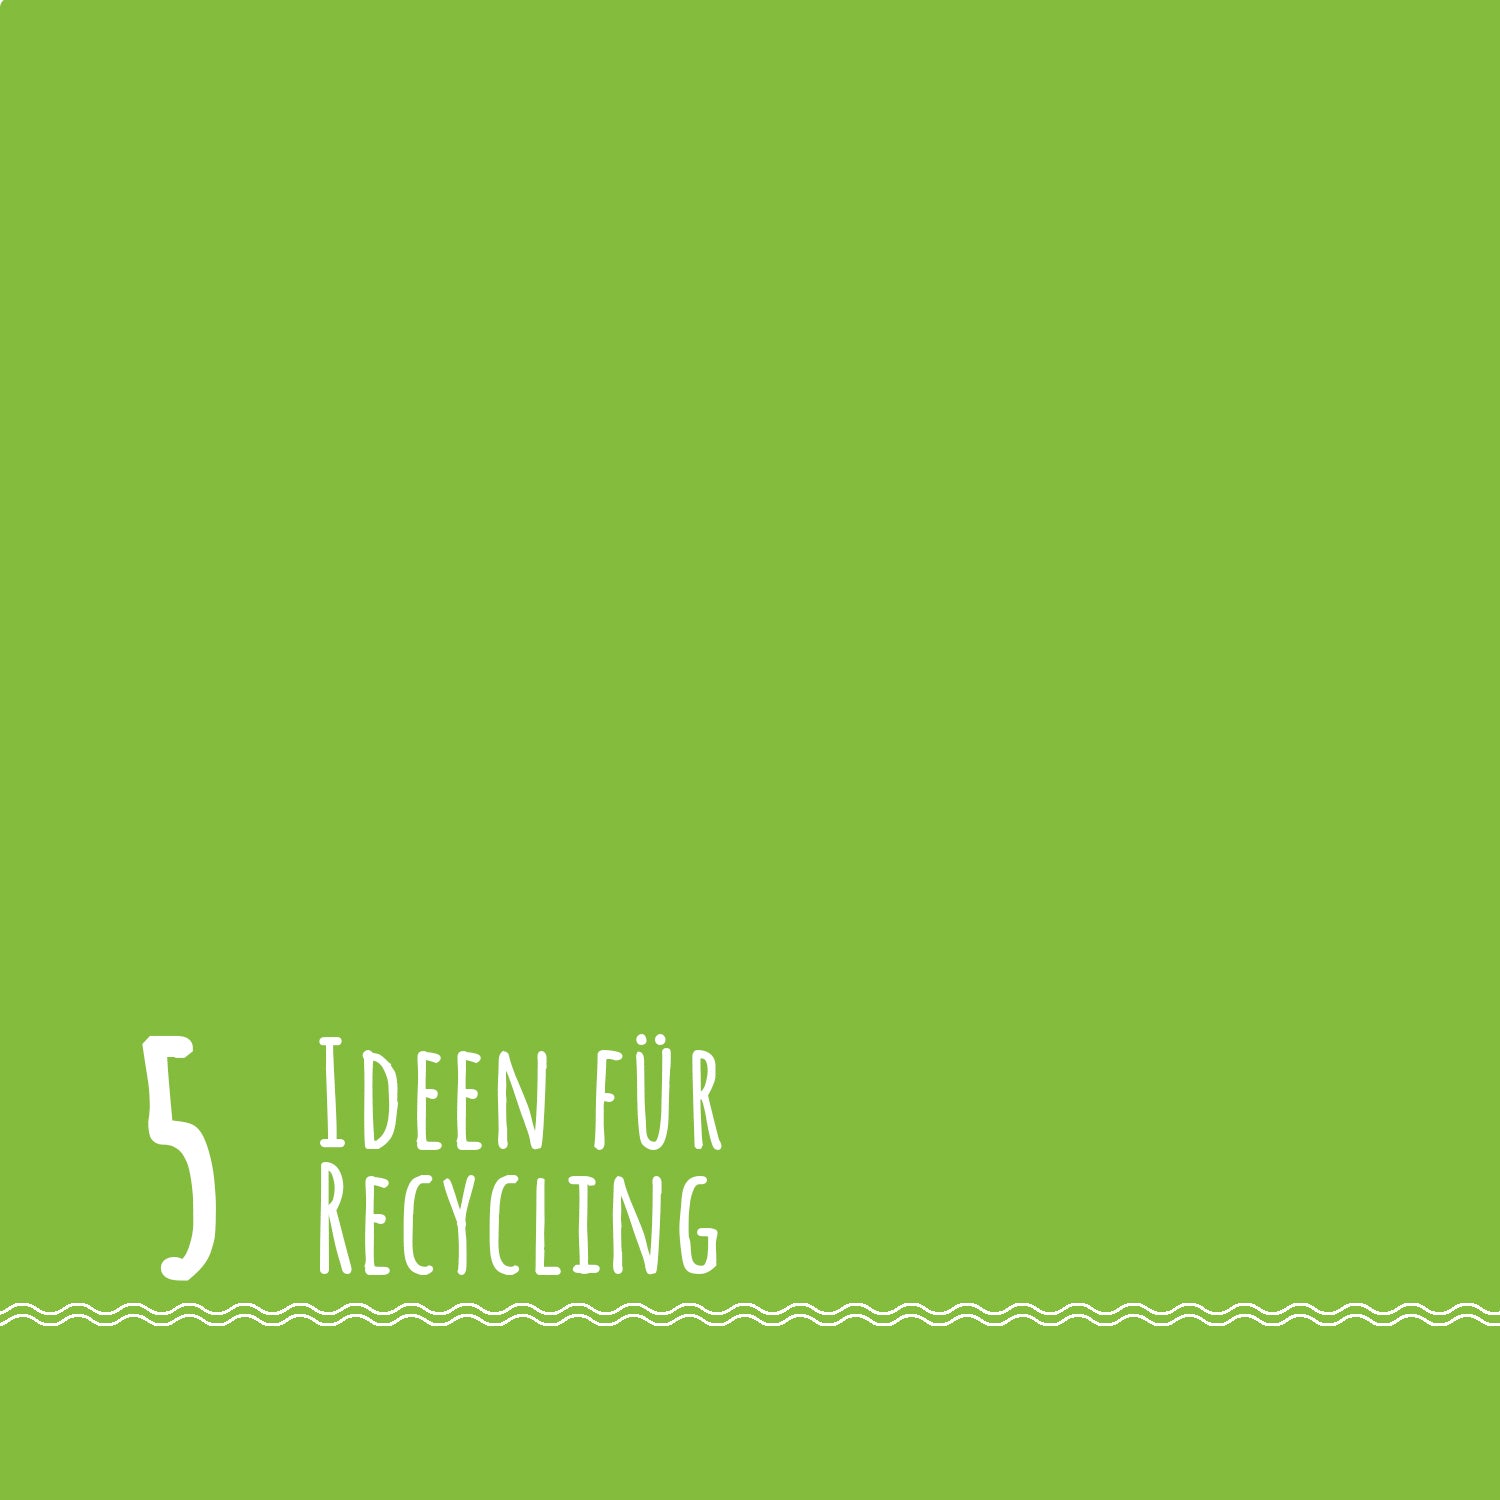 5 Ideen für Recycling